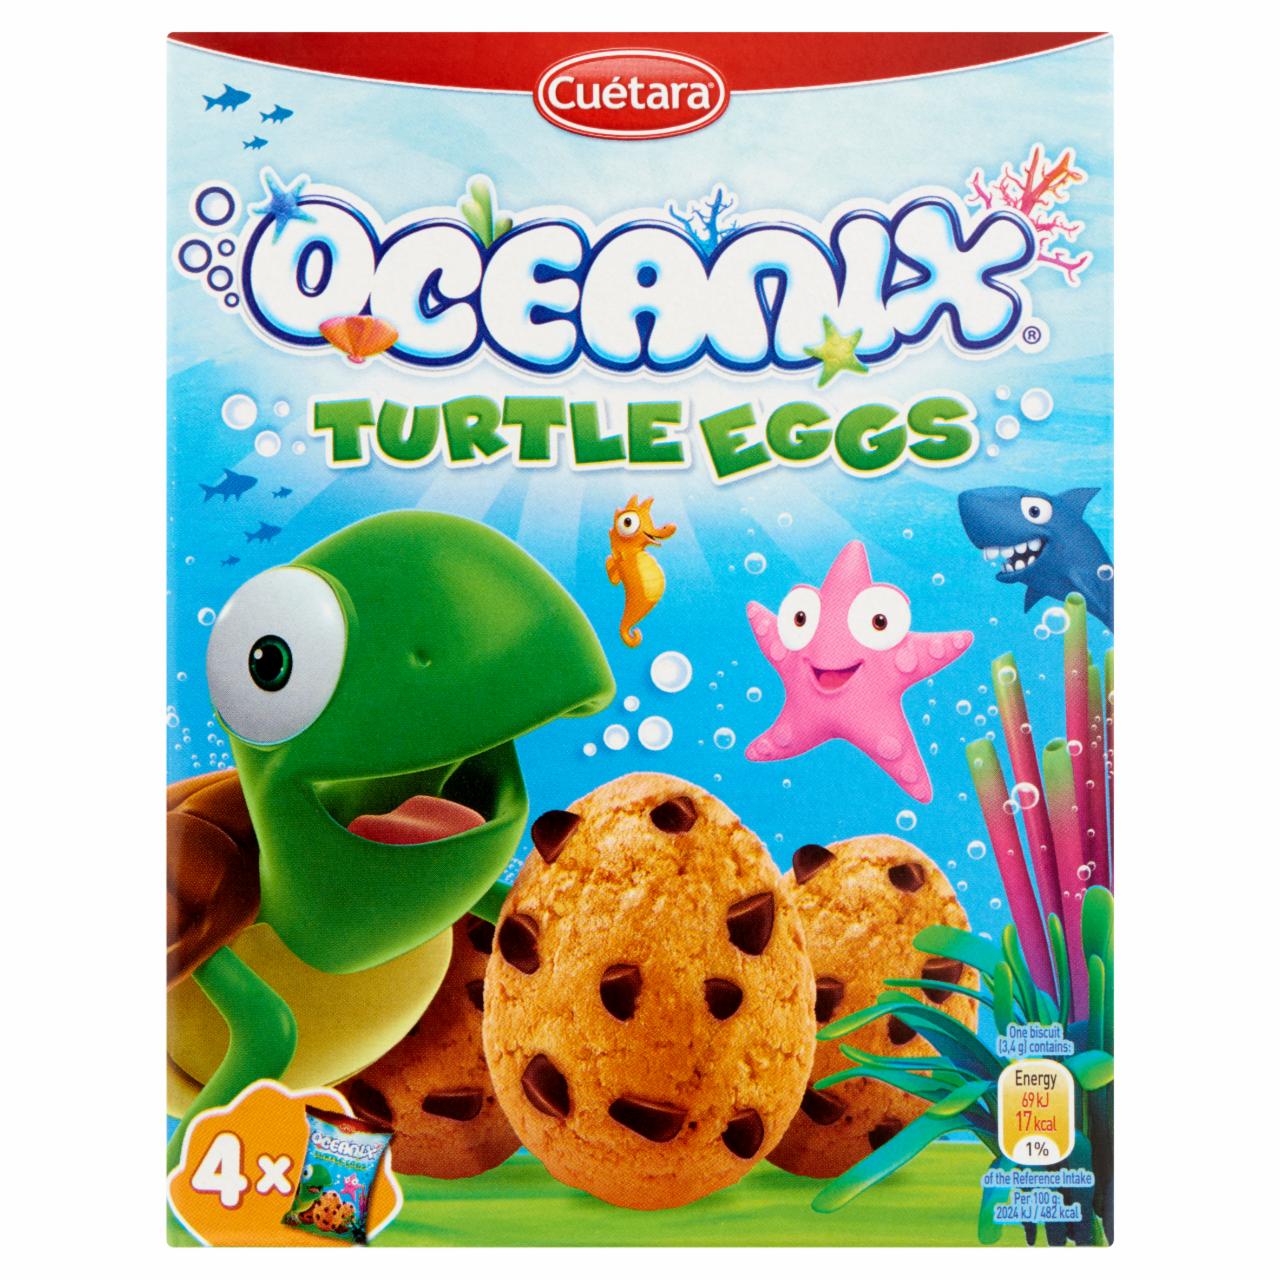 Képek - Oceanix Turtle Eggs gabonakeksz csokoládédarabokkal 4 x 35 g